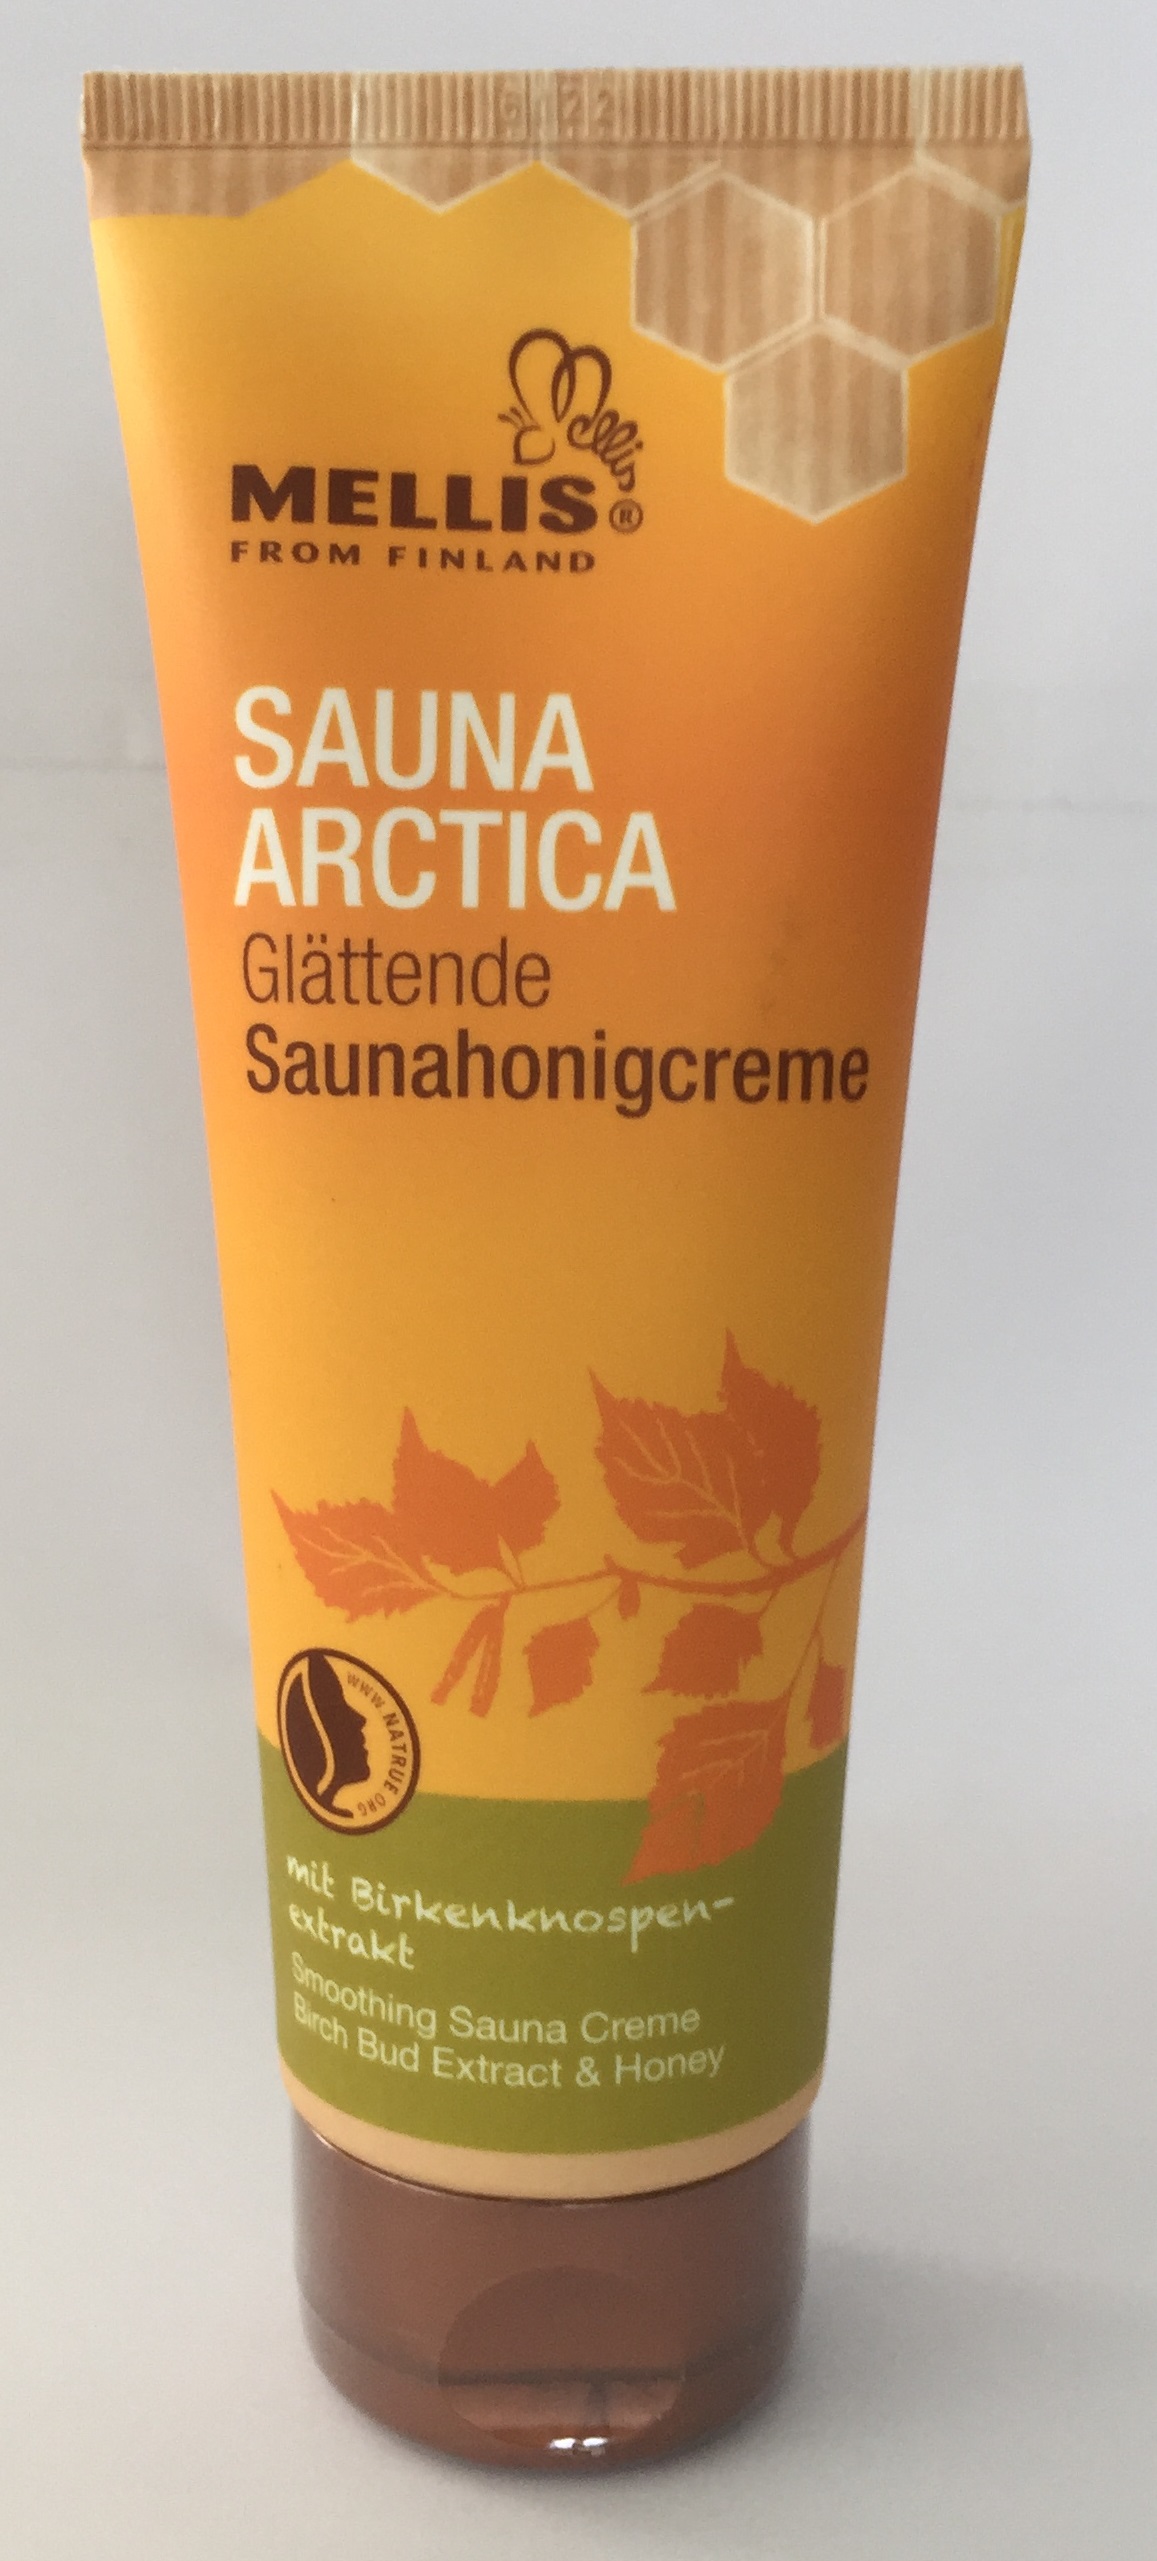 Sauna-Honig-Creme mit Birkenknospenextrakt